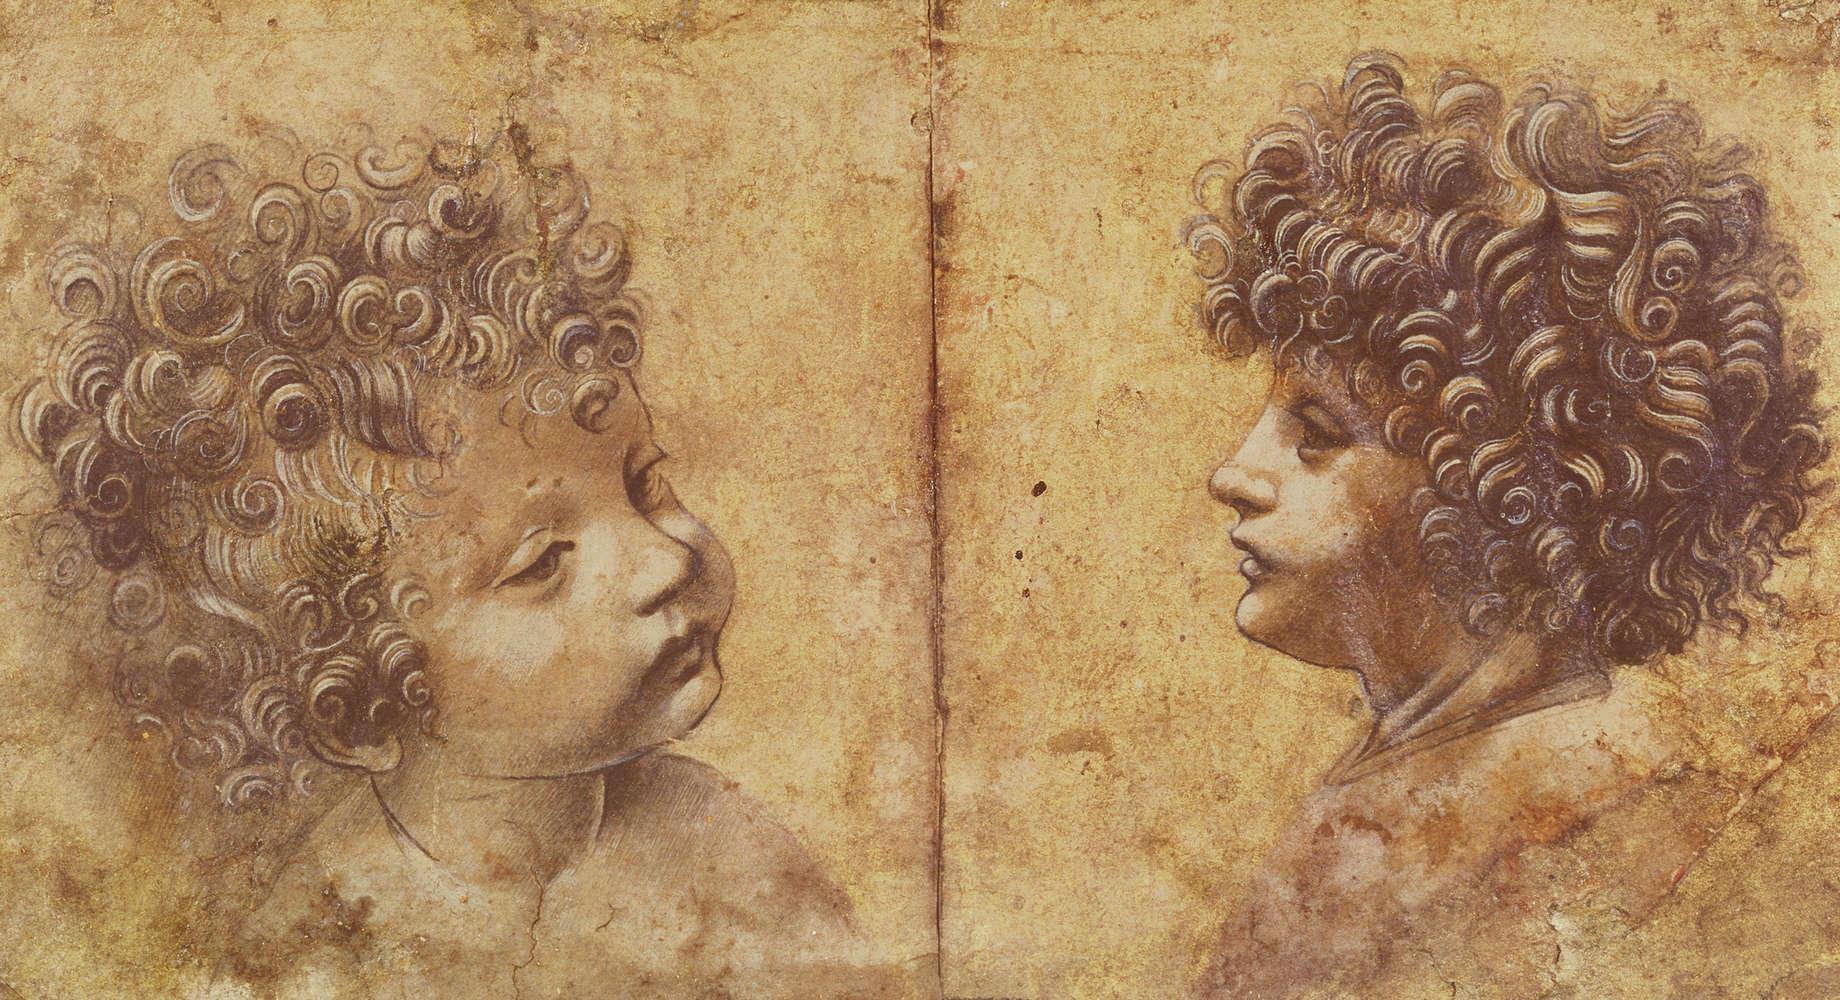             Mural "Estudio de la cabeza de un niño" de Leonardo da Vinci
        